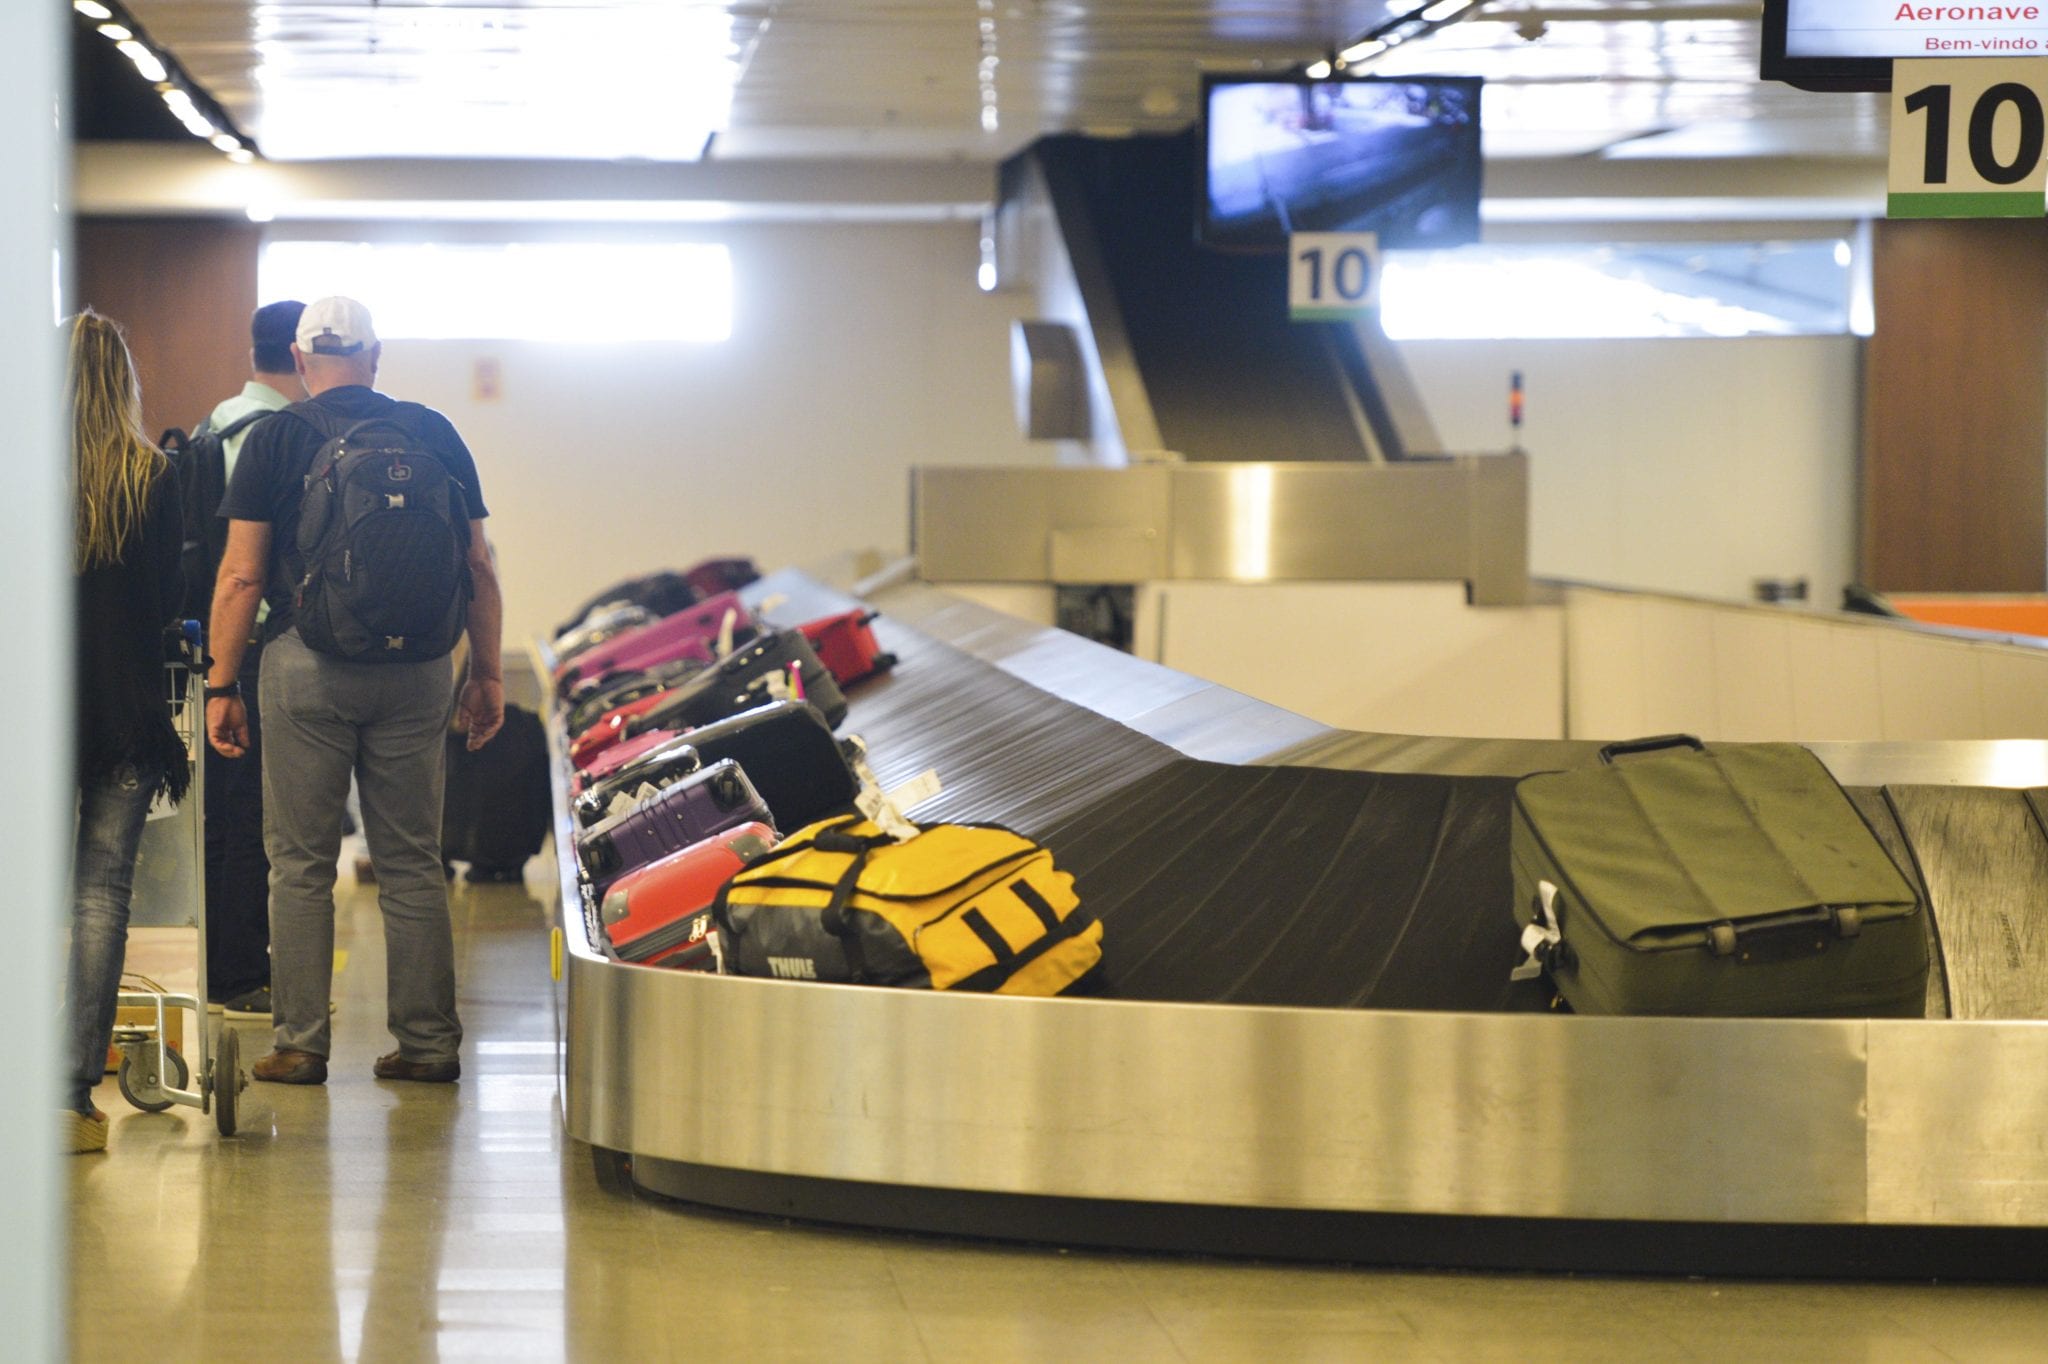 Passageiros retiram malas em aeroporto - foto de José Cruz/Agência Brasil